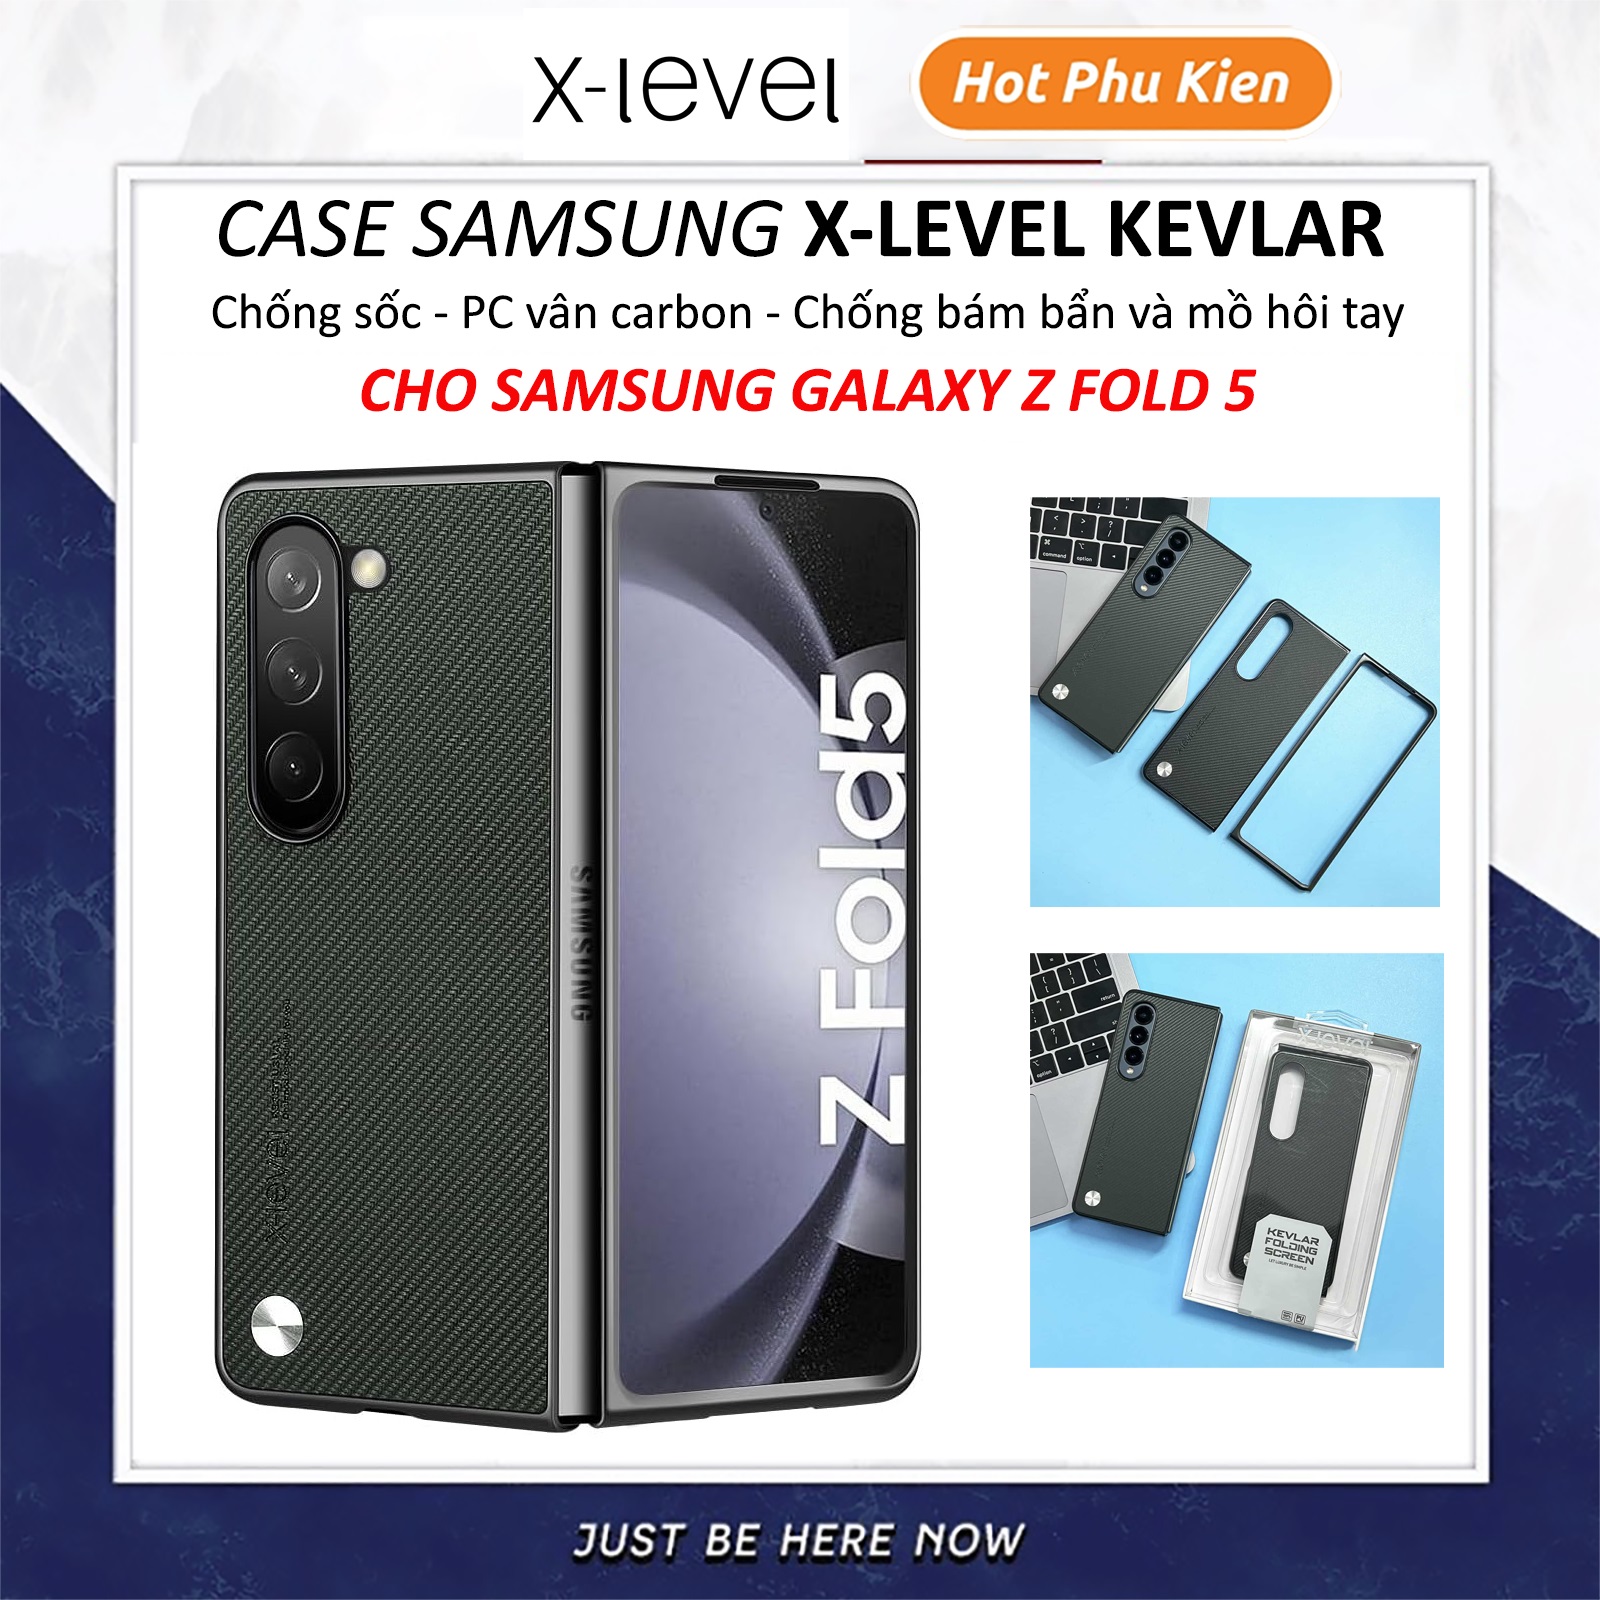 Ốp lưng chống sốc cho Samsung Galaxy Z Fold 5 hiệu X-Level Kevlar Folding Screen - chất liệu vân carbon cao cấp, trang bị khả năng chống va đập cực tốt - hàng nhập khẩu